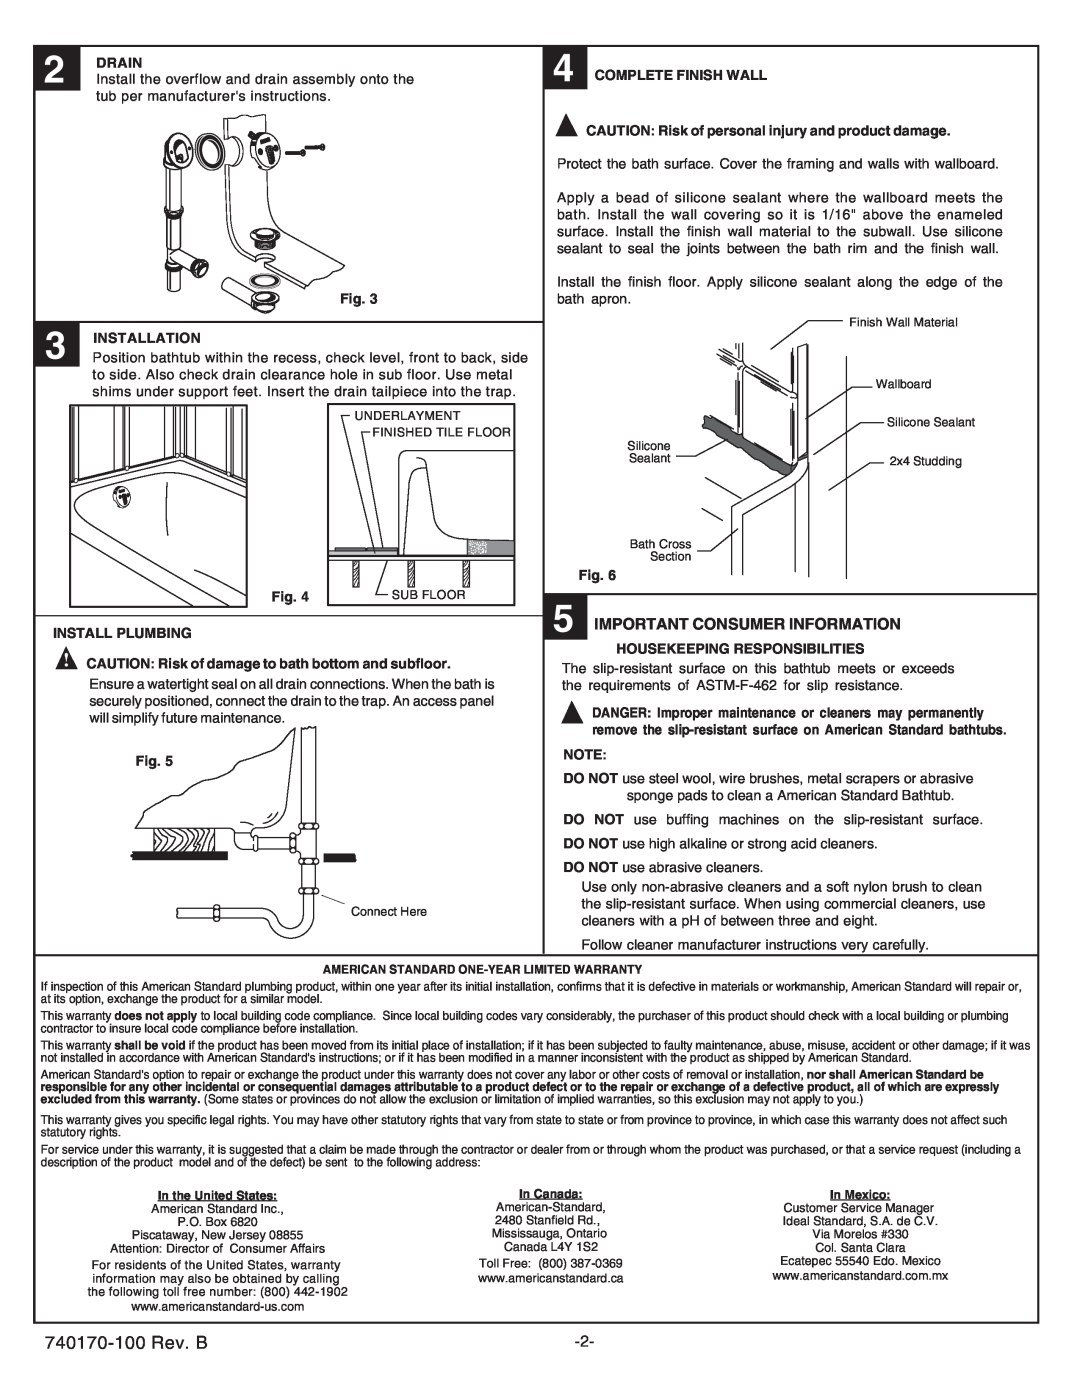 American Standard 2696.202, 2696.102 installation instructions 740170-100 Rev. B, Important Consumer Information 